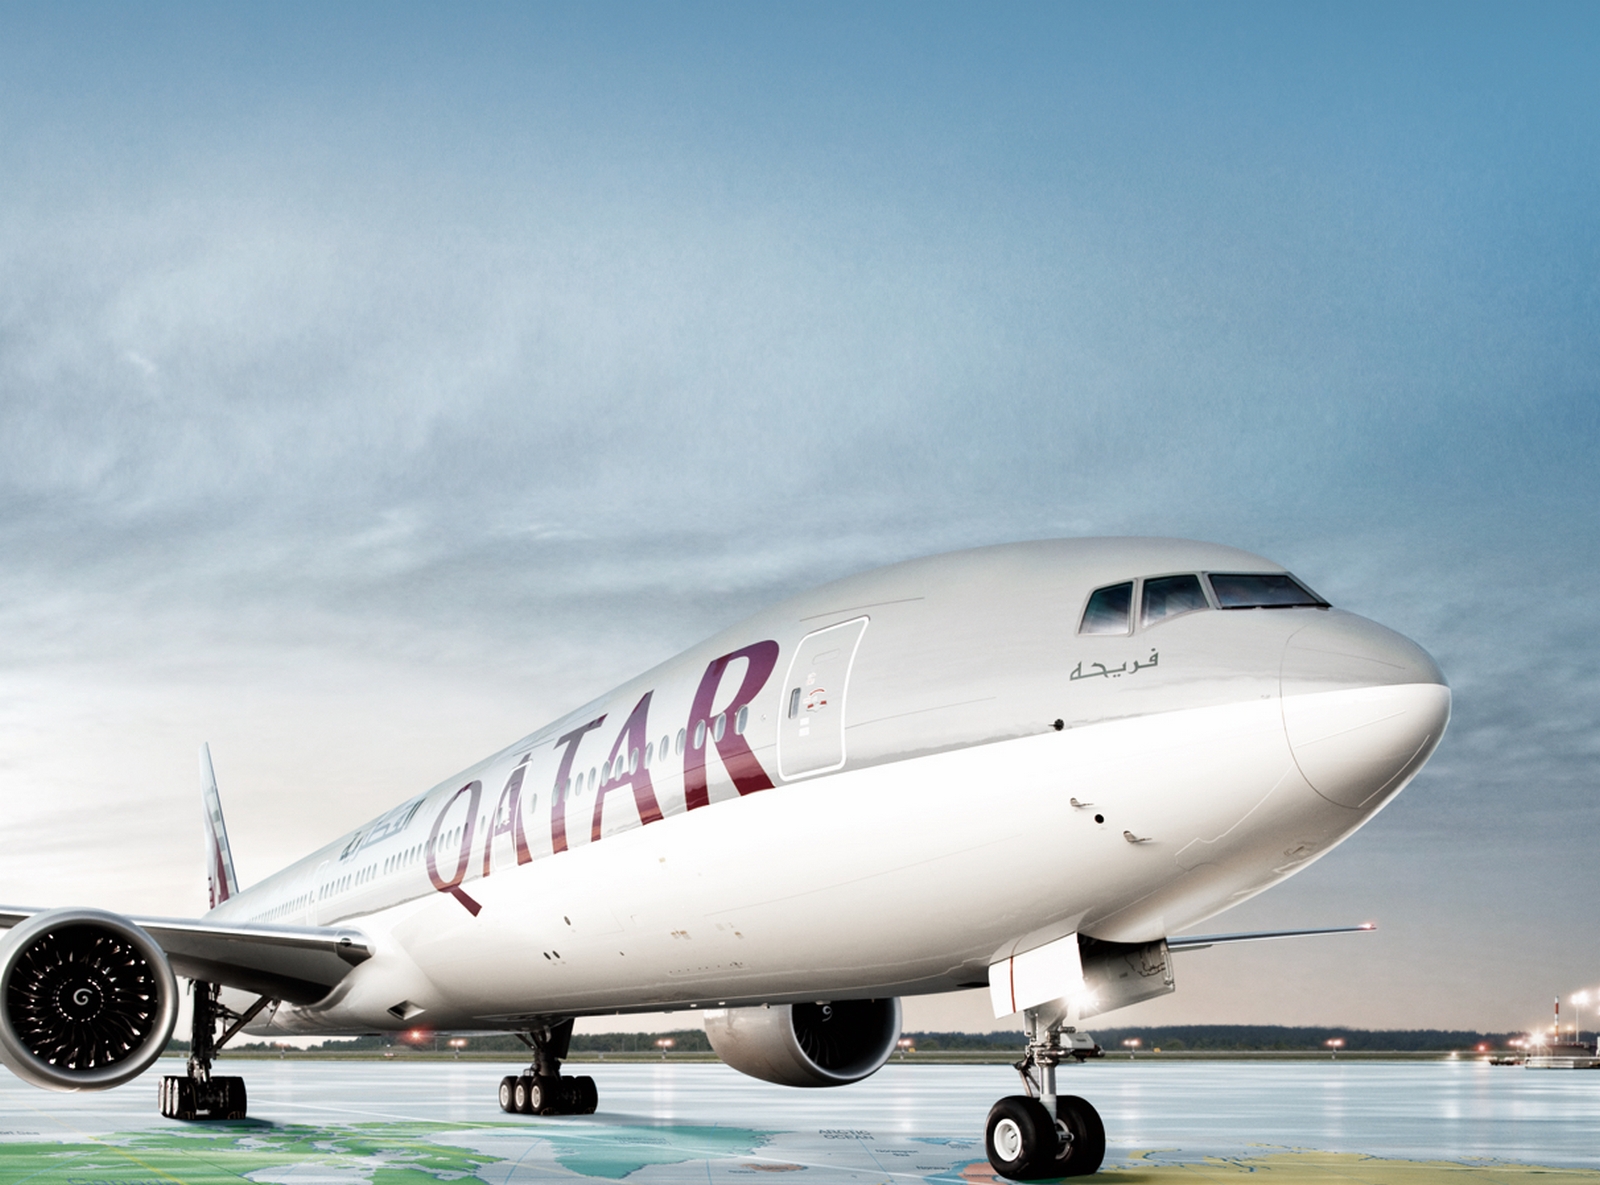 qatar airways boarding music 2016 torrent